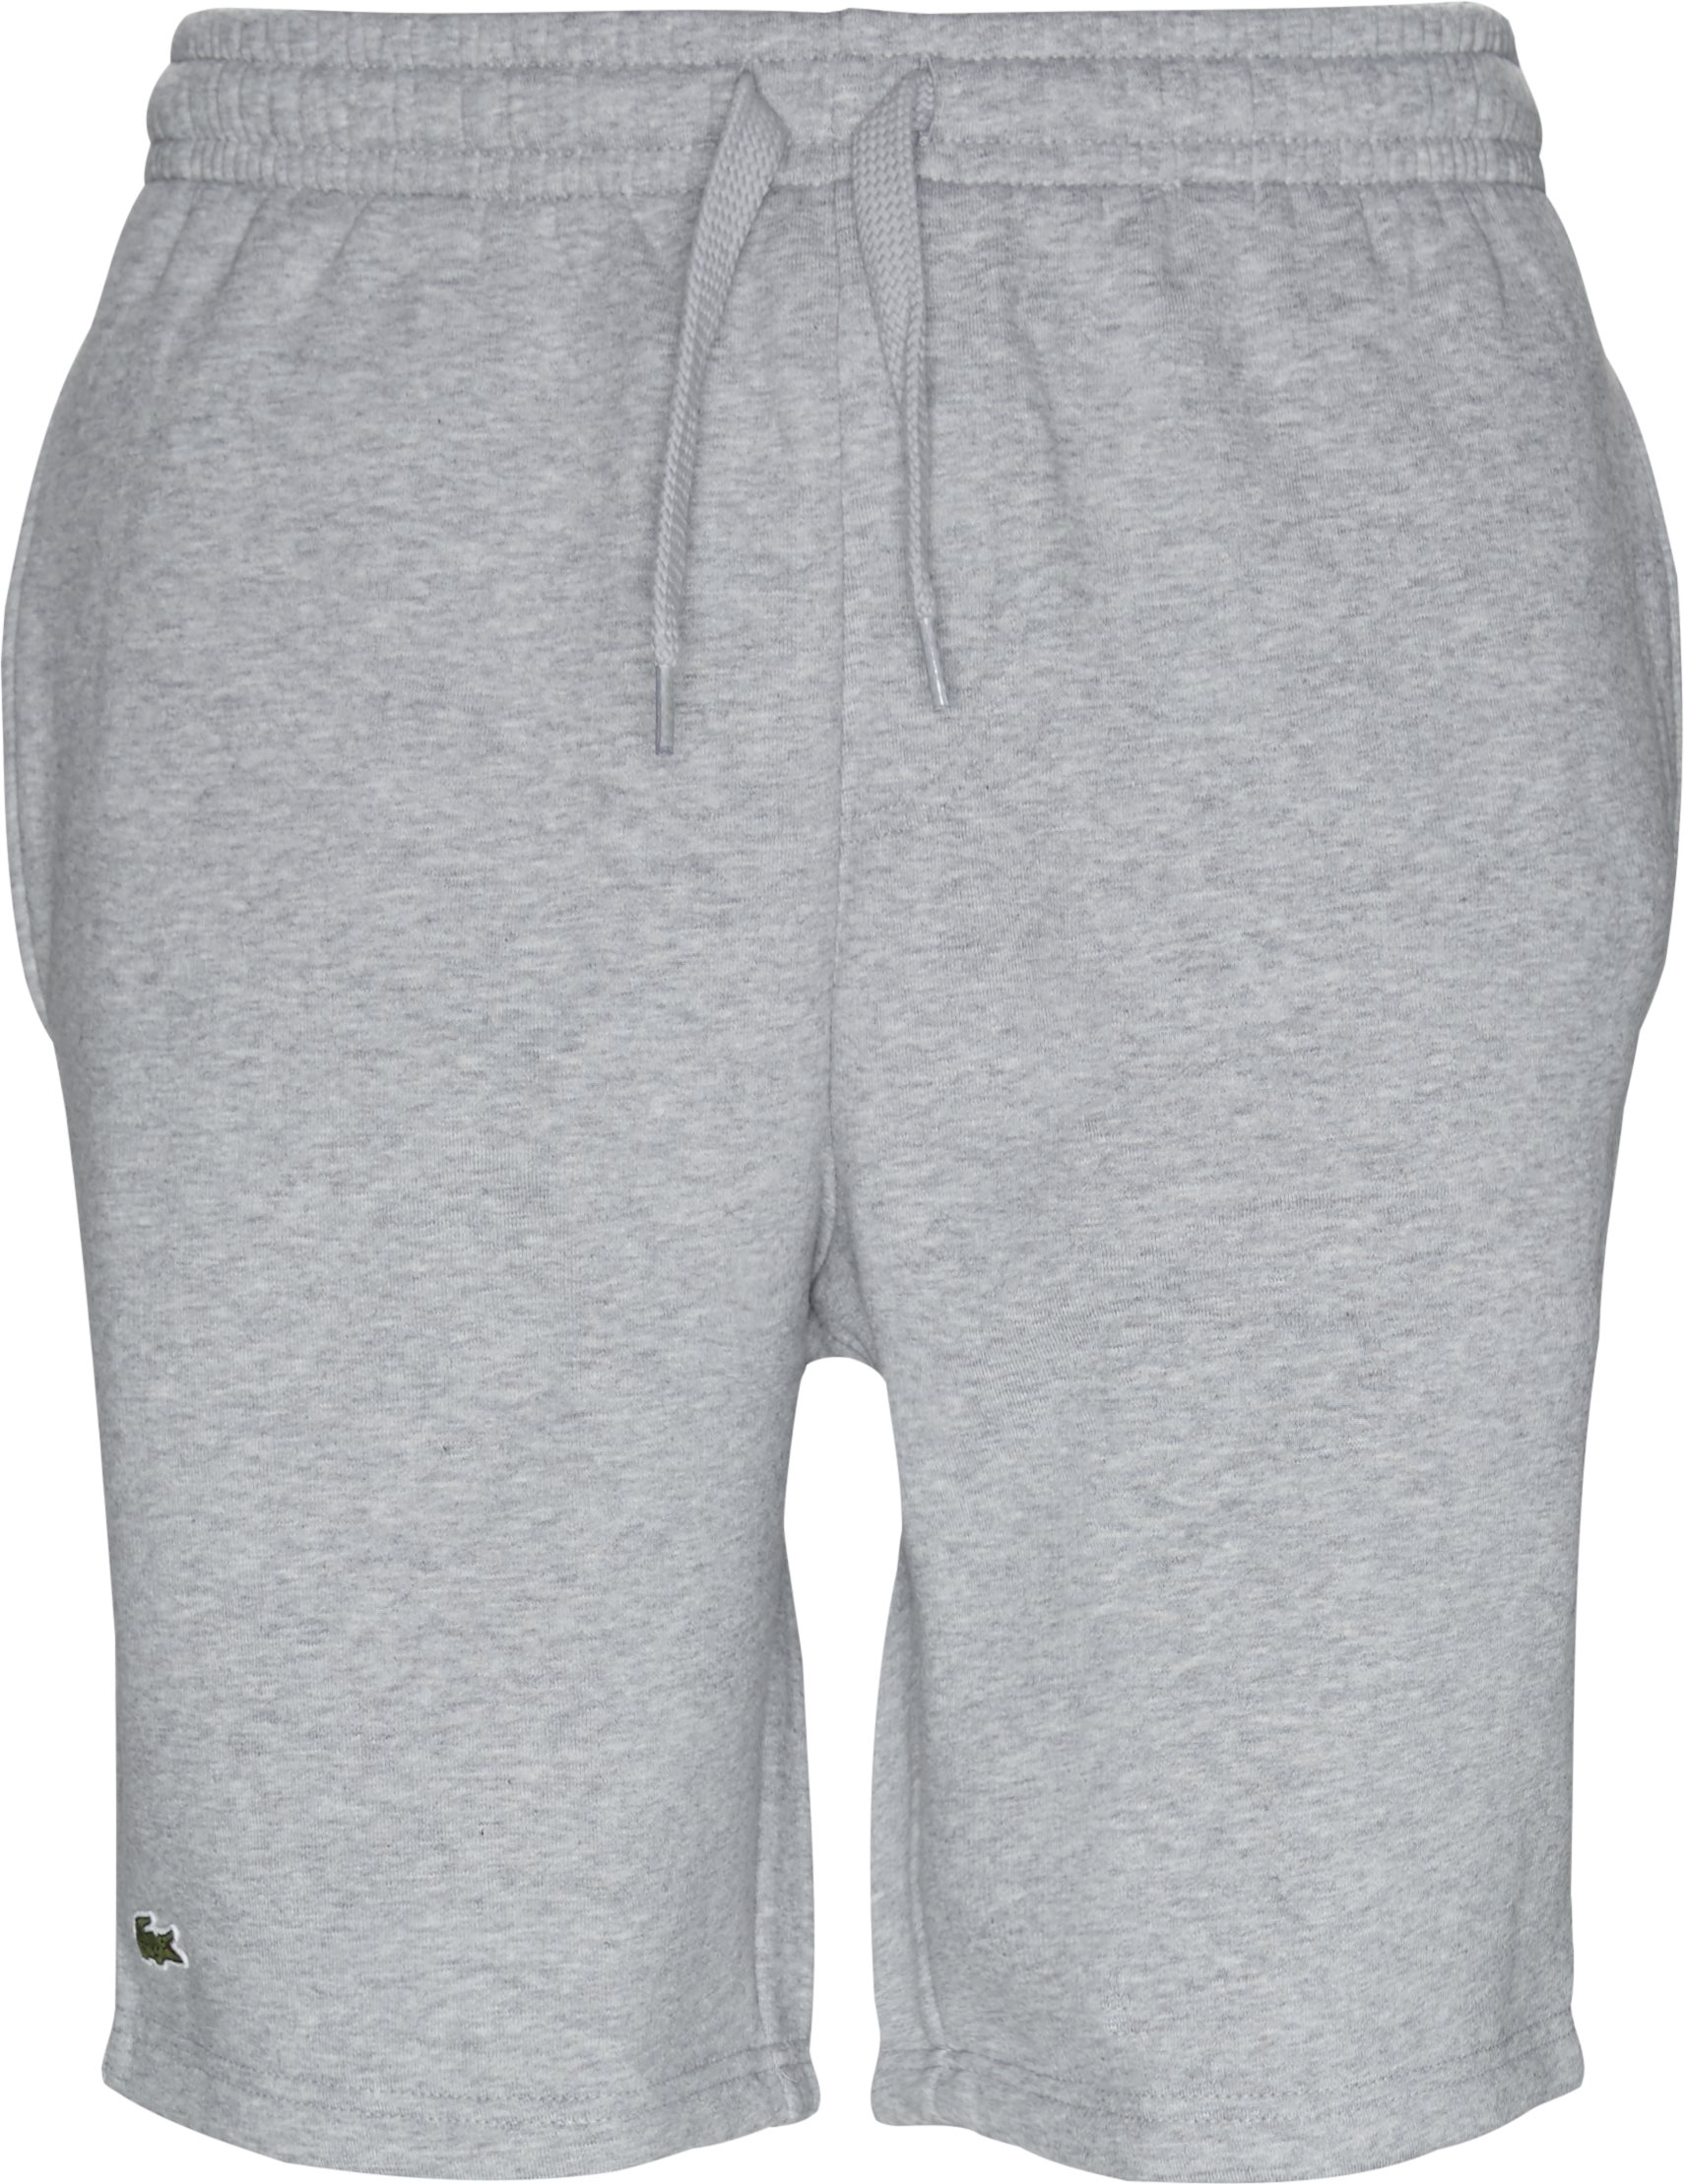 Shorts i tennisfleece - Shorts - Regular fit - Grå